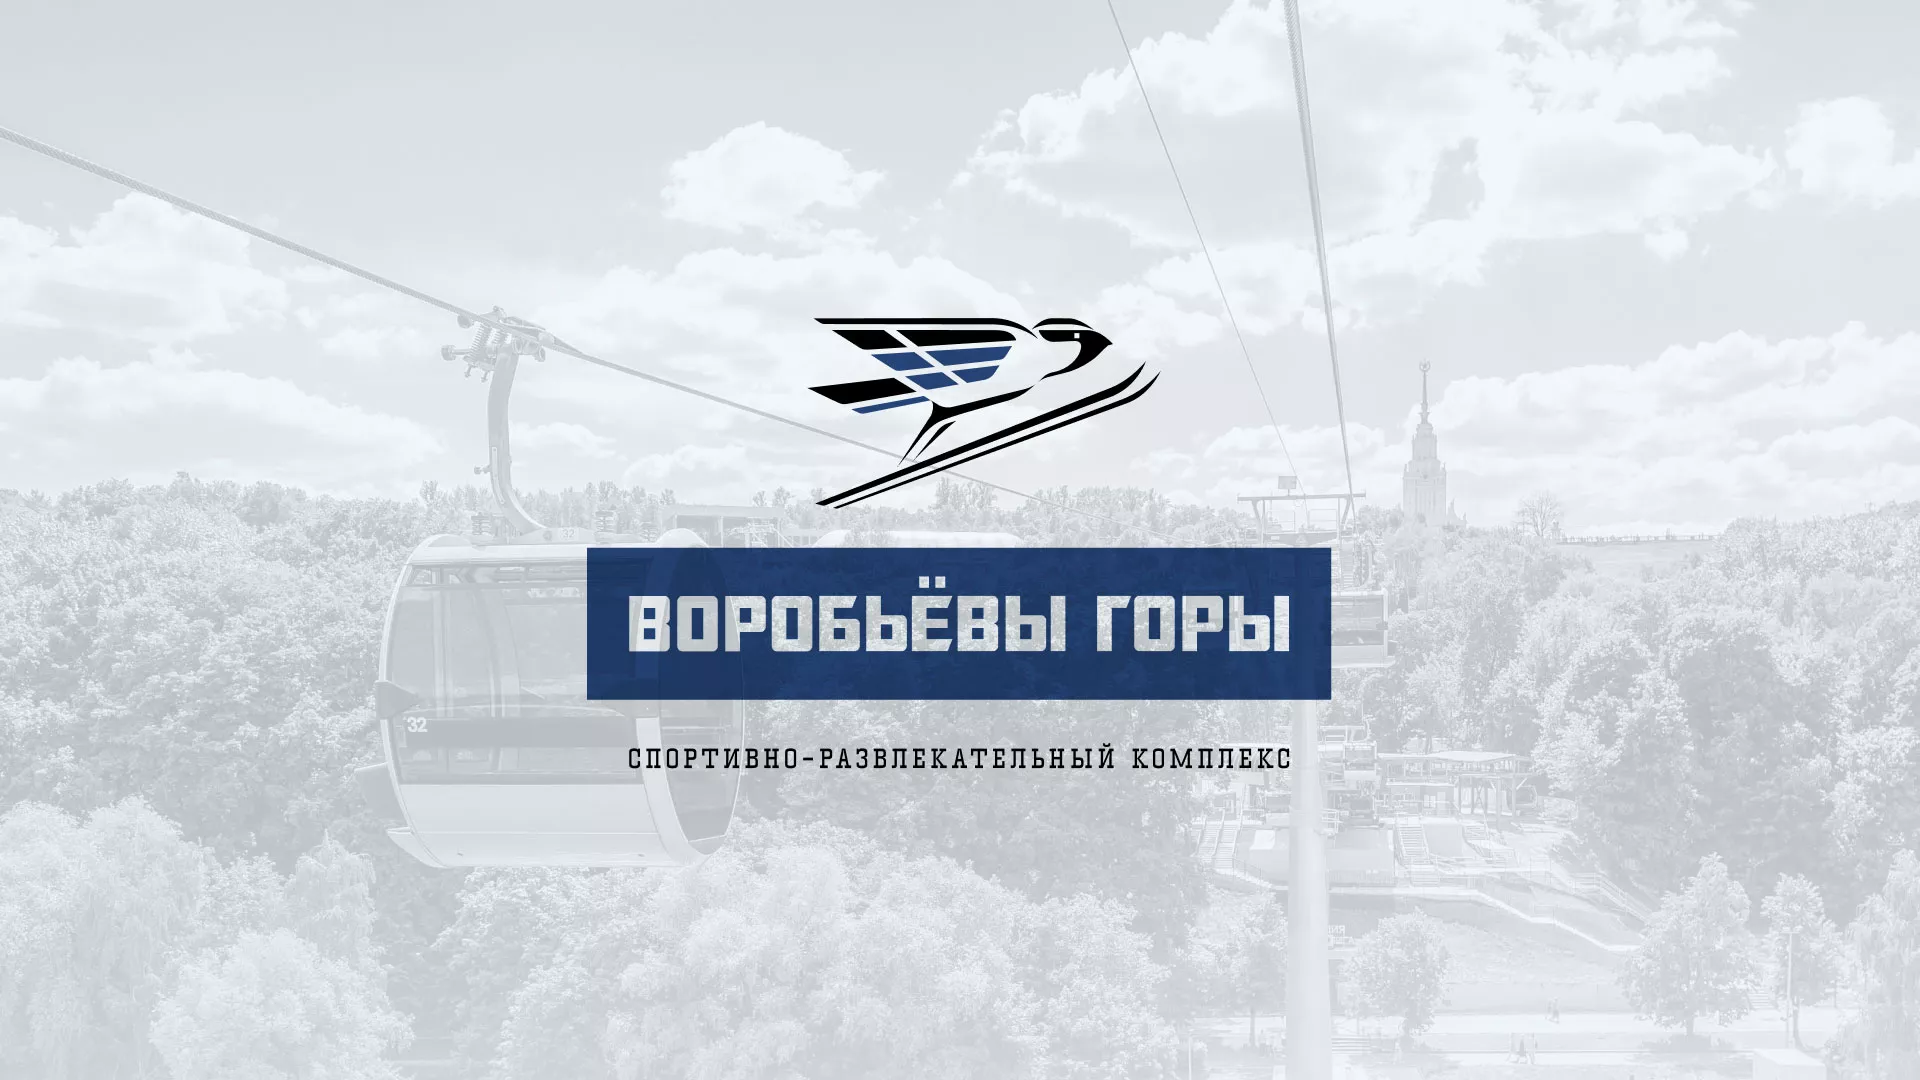 Разработка сайта в Исилькуле для спортивно-развлекательного комплекса «Воробьёвы горы»